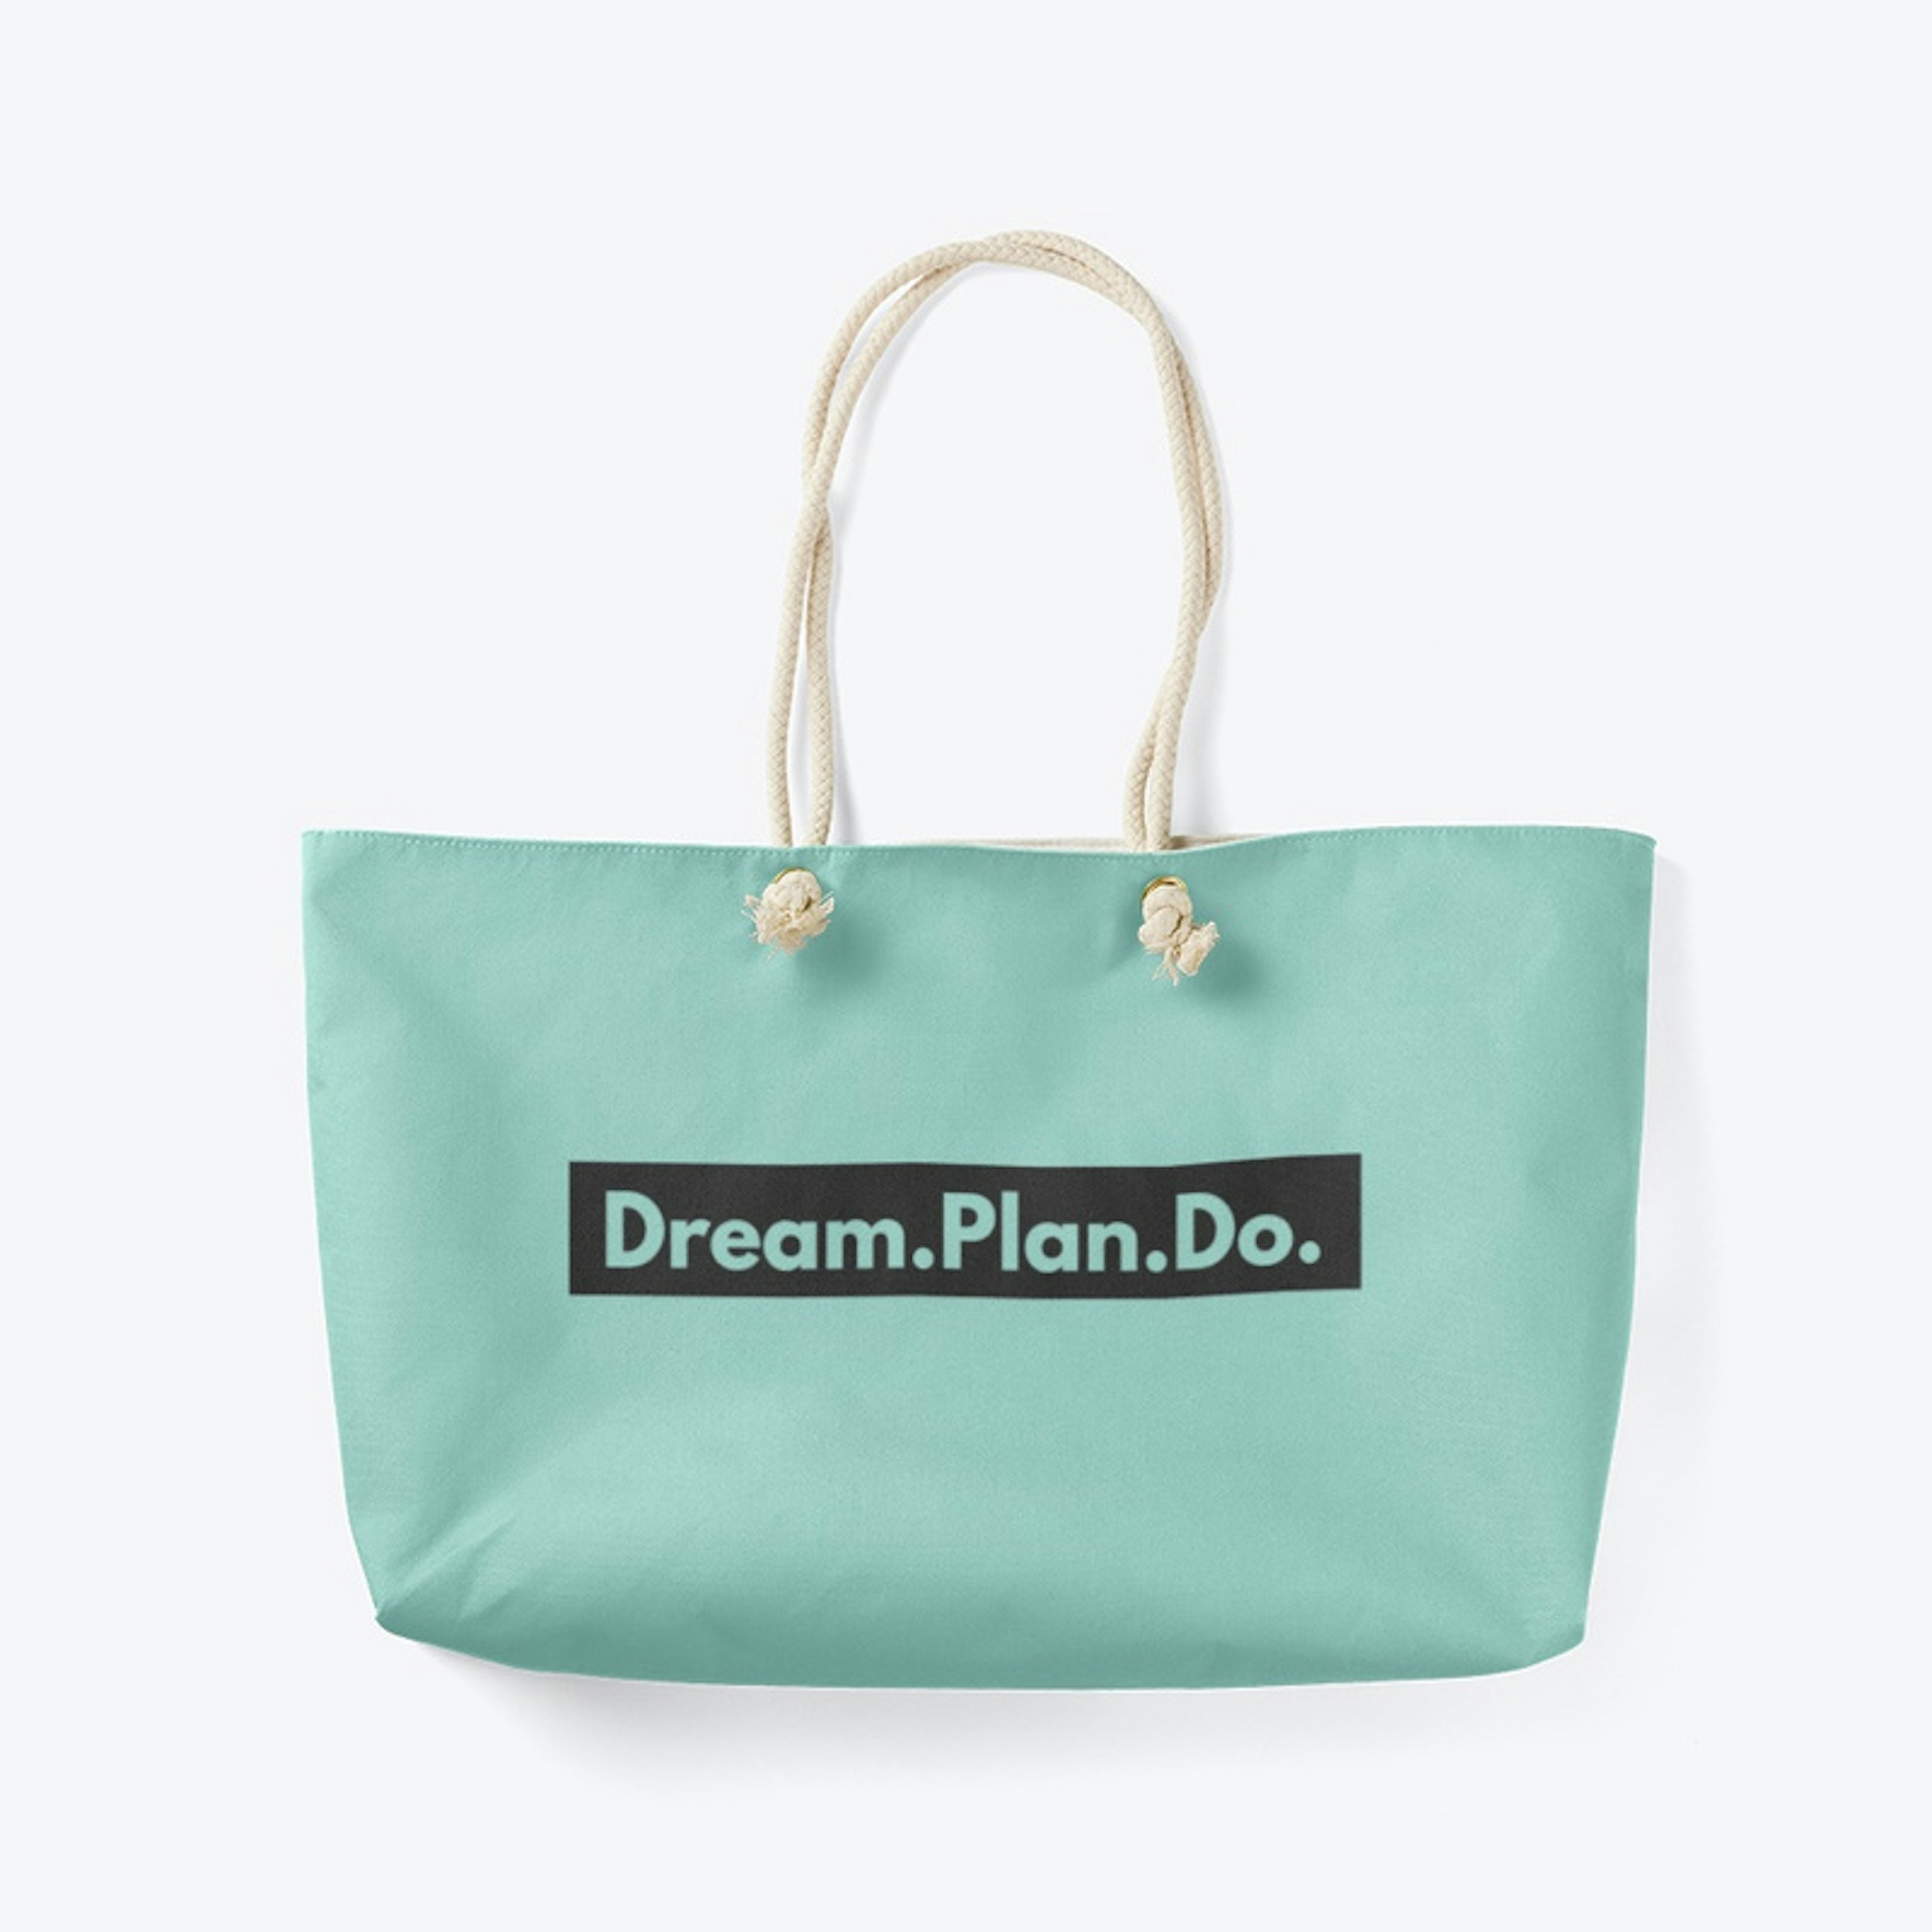 Dream.Plan.Do